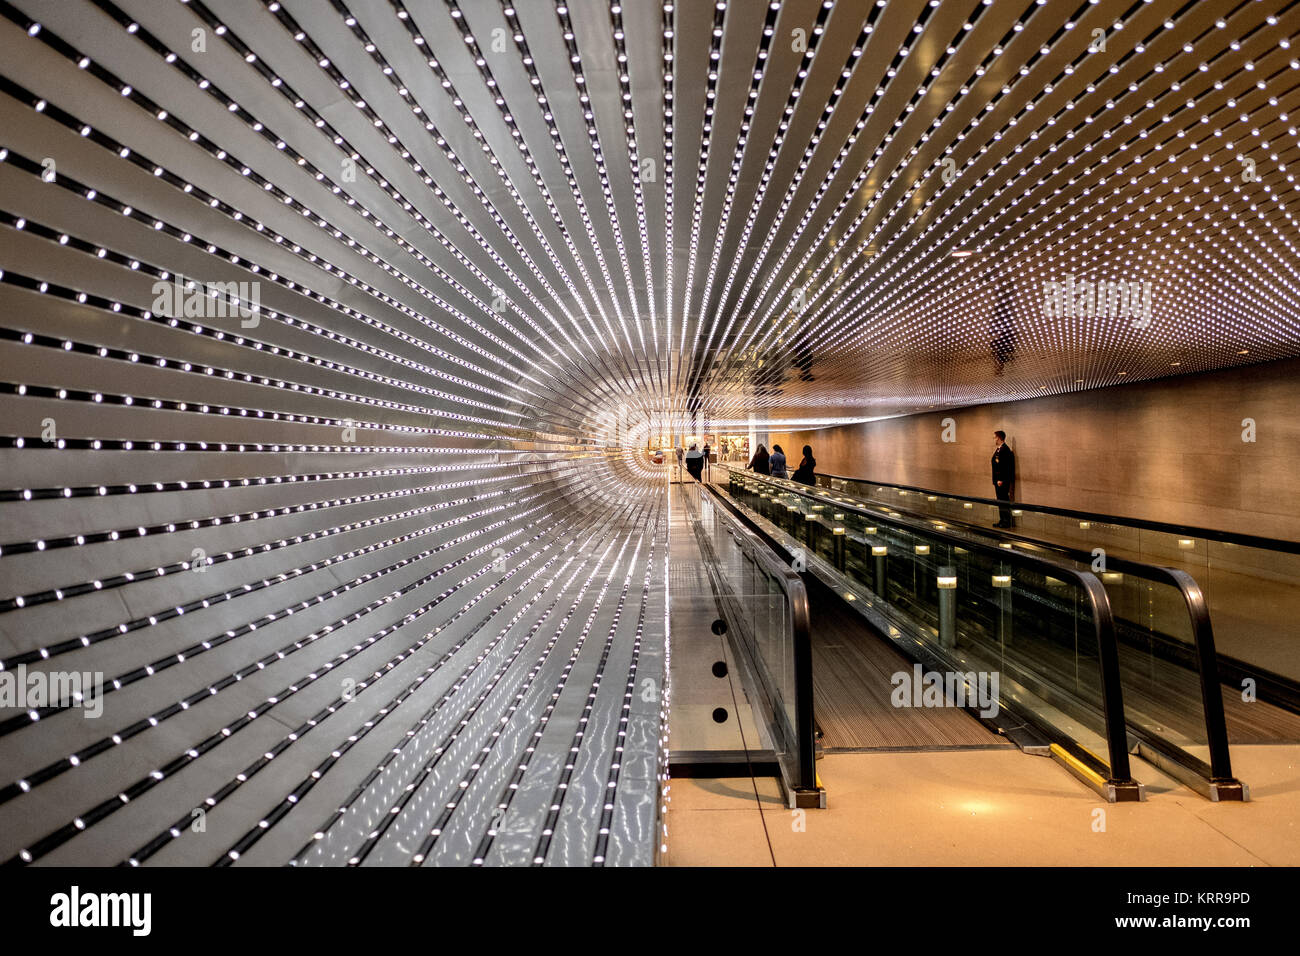 WASHINGTON DC, Stati Uniti — Multiverse di Leo Villareal è un'installazione di luci a LED ipnotizzante presso la National Gallery of Art di Washington DC. La grafica dinamica è composta da 41.000 nodi LED, che creano un'esperienza visiva accattivante che esplora il concetto del multiverso attraverso la luce, il movimento e la tecnologia. Foto Stock